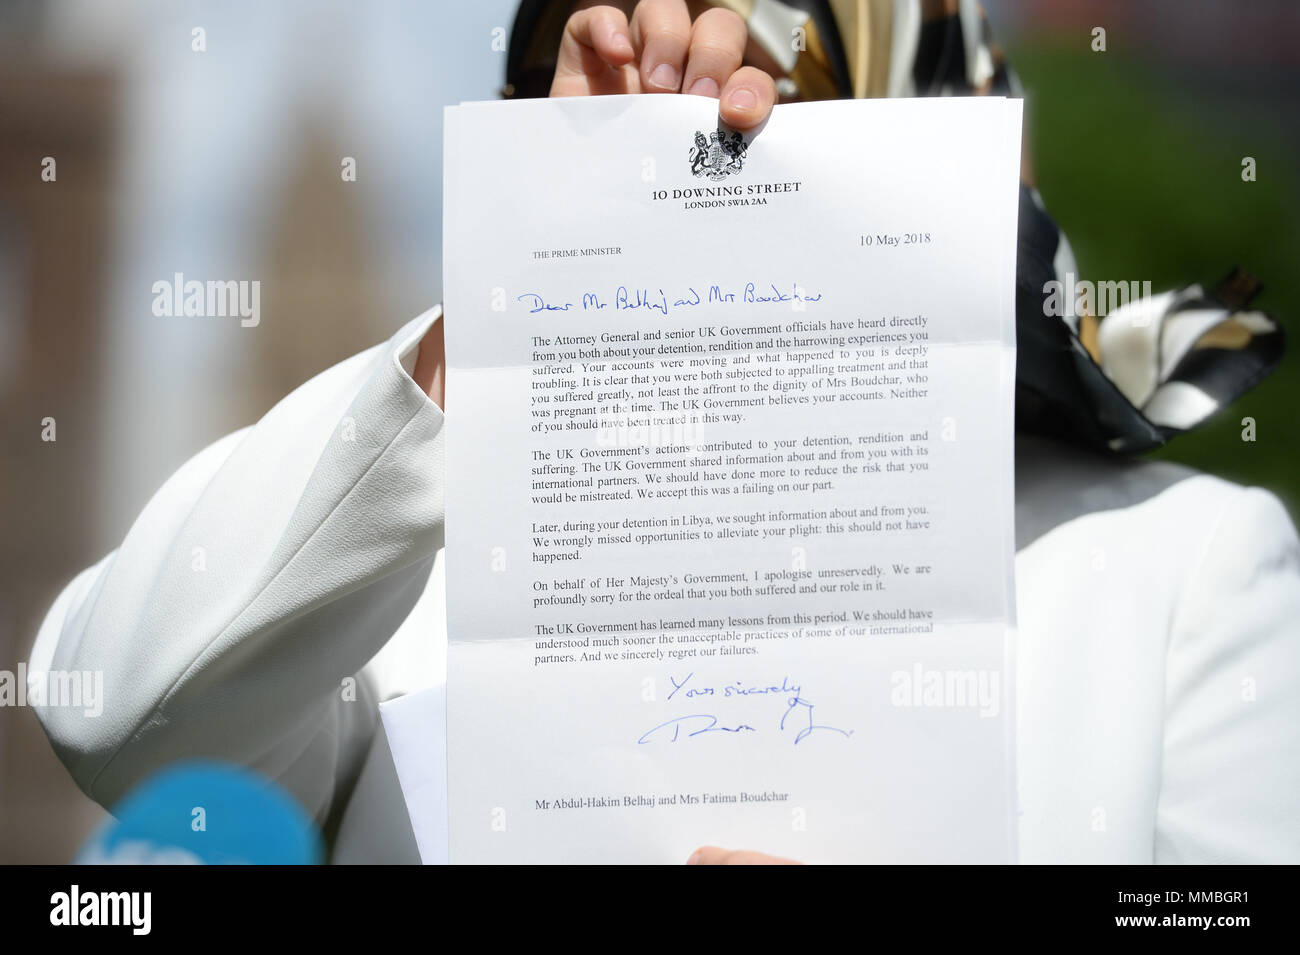 Fatima Boudchar Holding einen Brief außerhalb der Häuser des Parlaments in London. Die britische Regierung hat a&Ograve; volle und endgültige Regelung&Oacute; ehemalige libysche dissident Abdul Hakim Belhaj, Attorney General Jeremy Wright hat das Unterhaus gesagt. Stockfoto